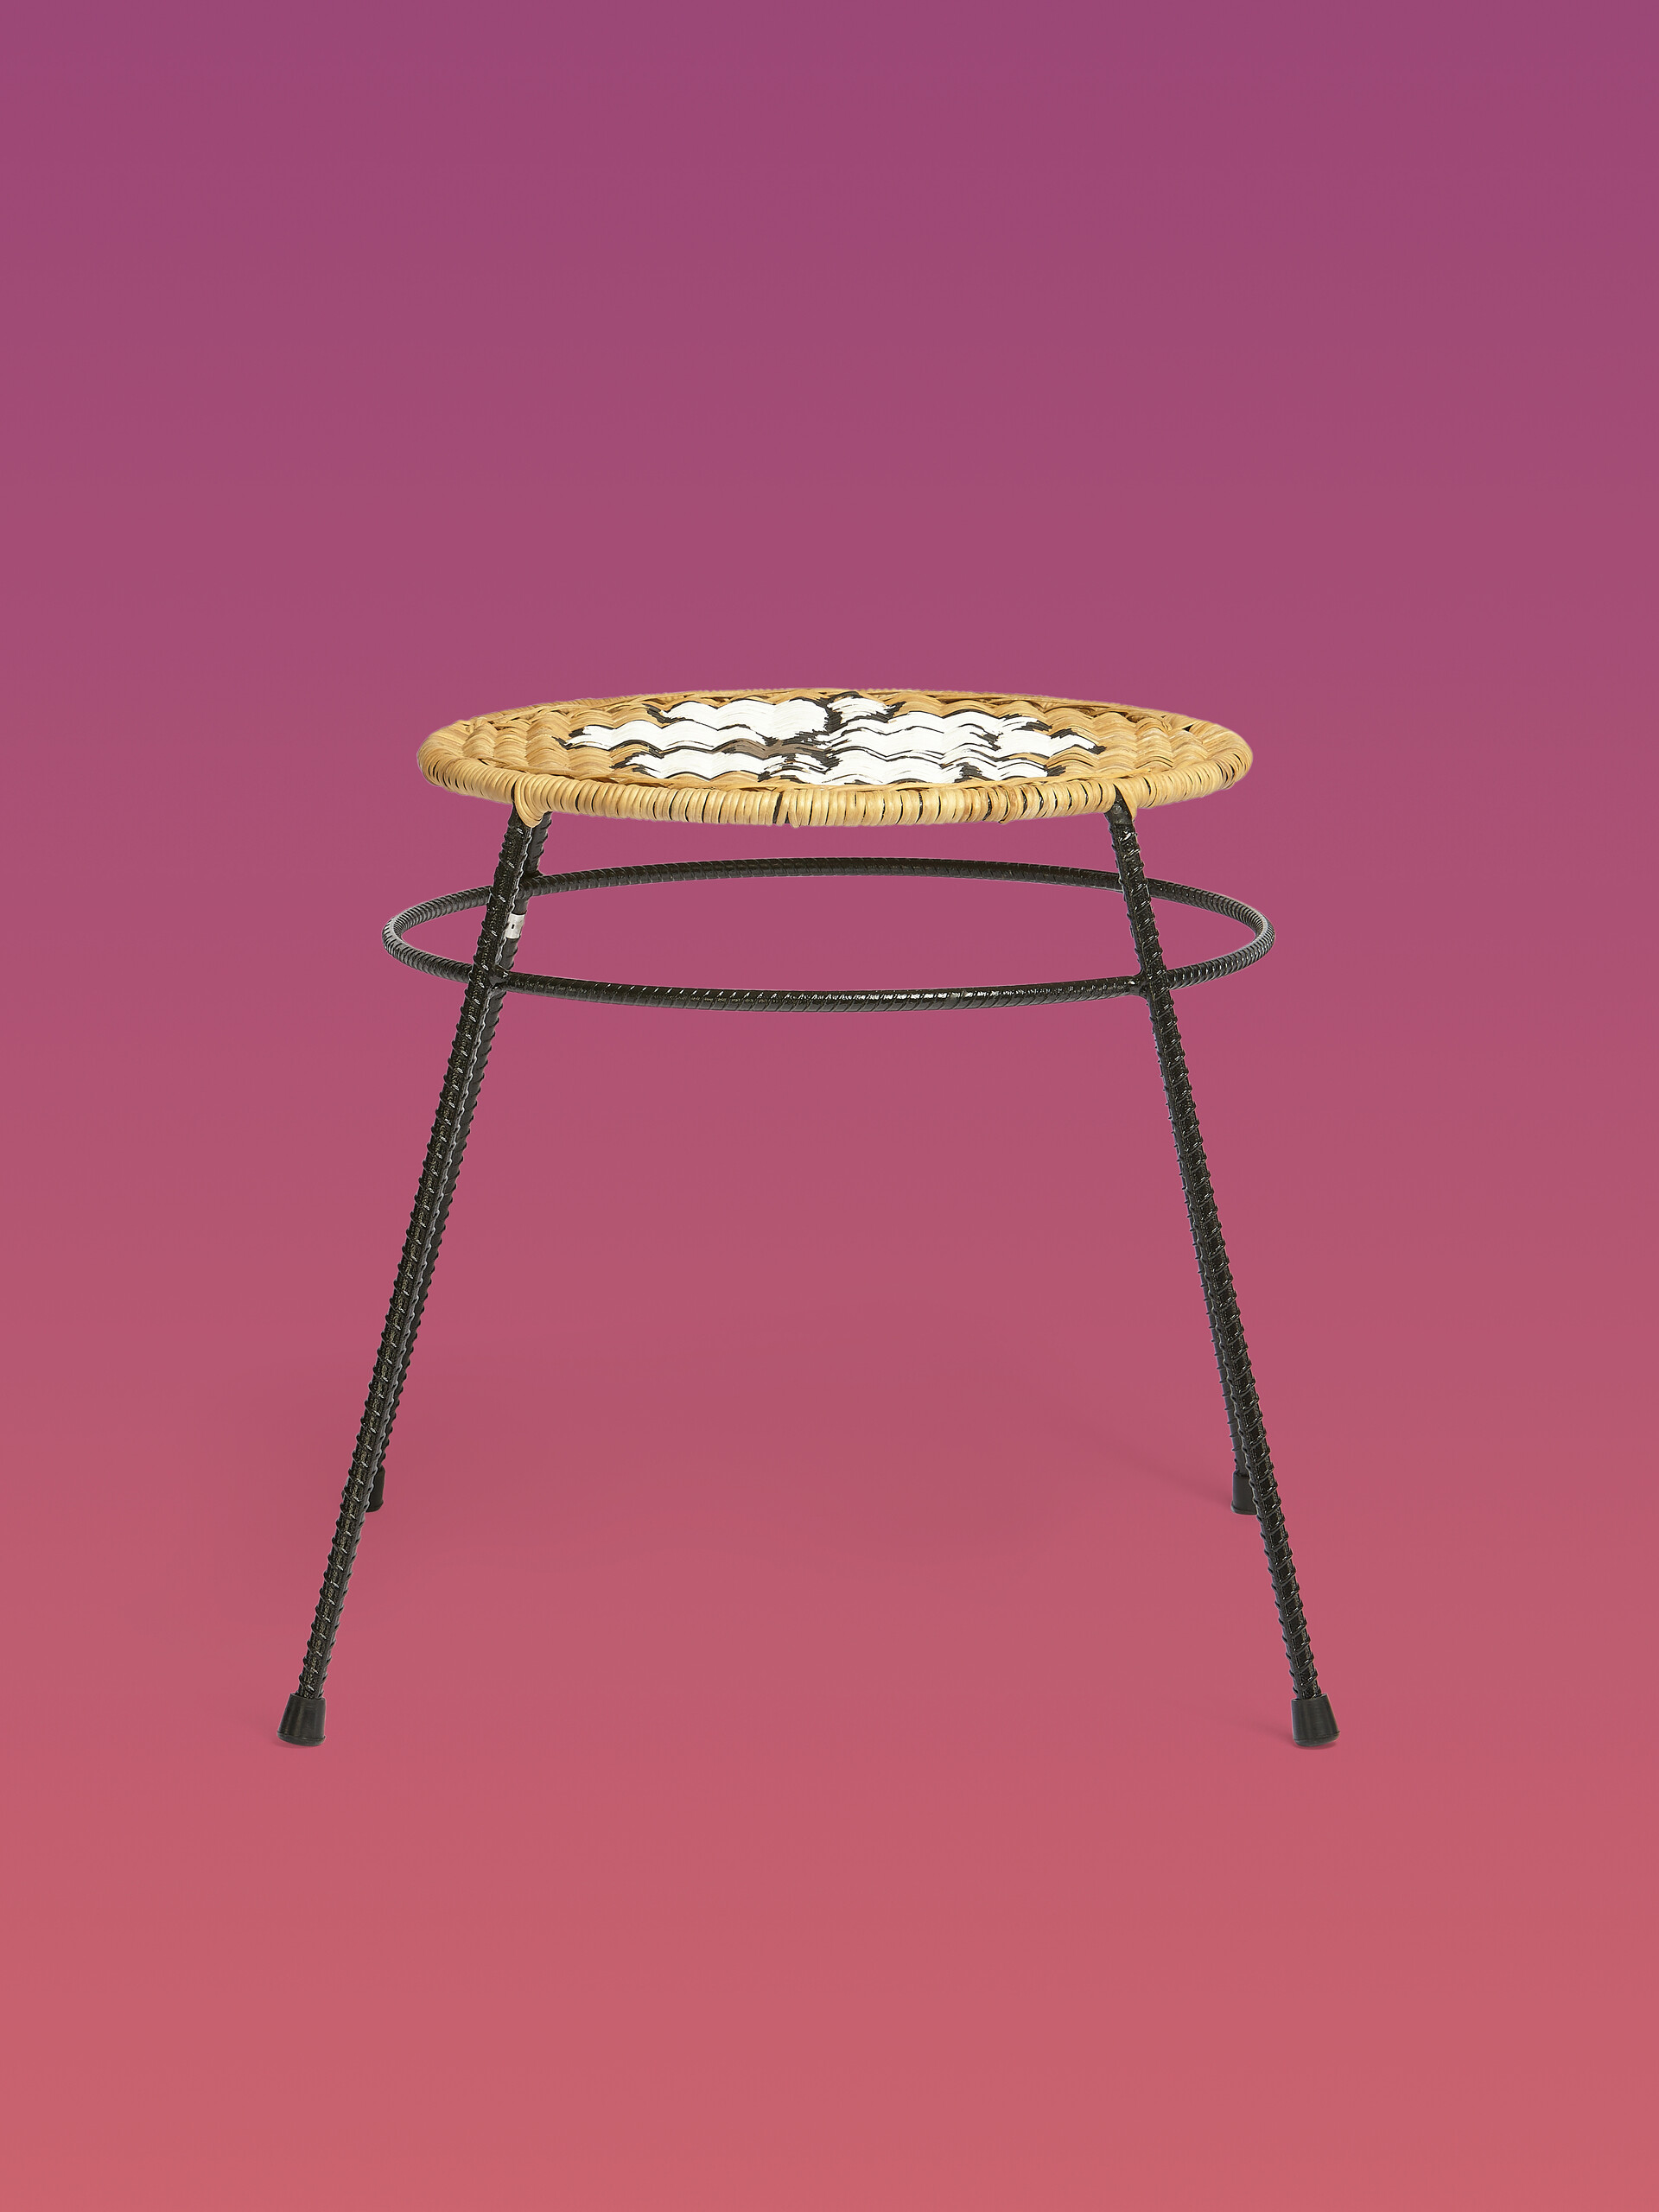 Sgabello-tavolo fiore MARNI MARKET in ferro fibra - Arredamento - Image 1